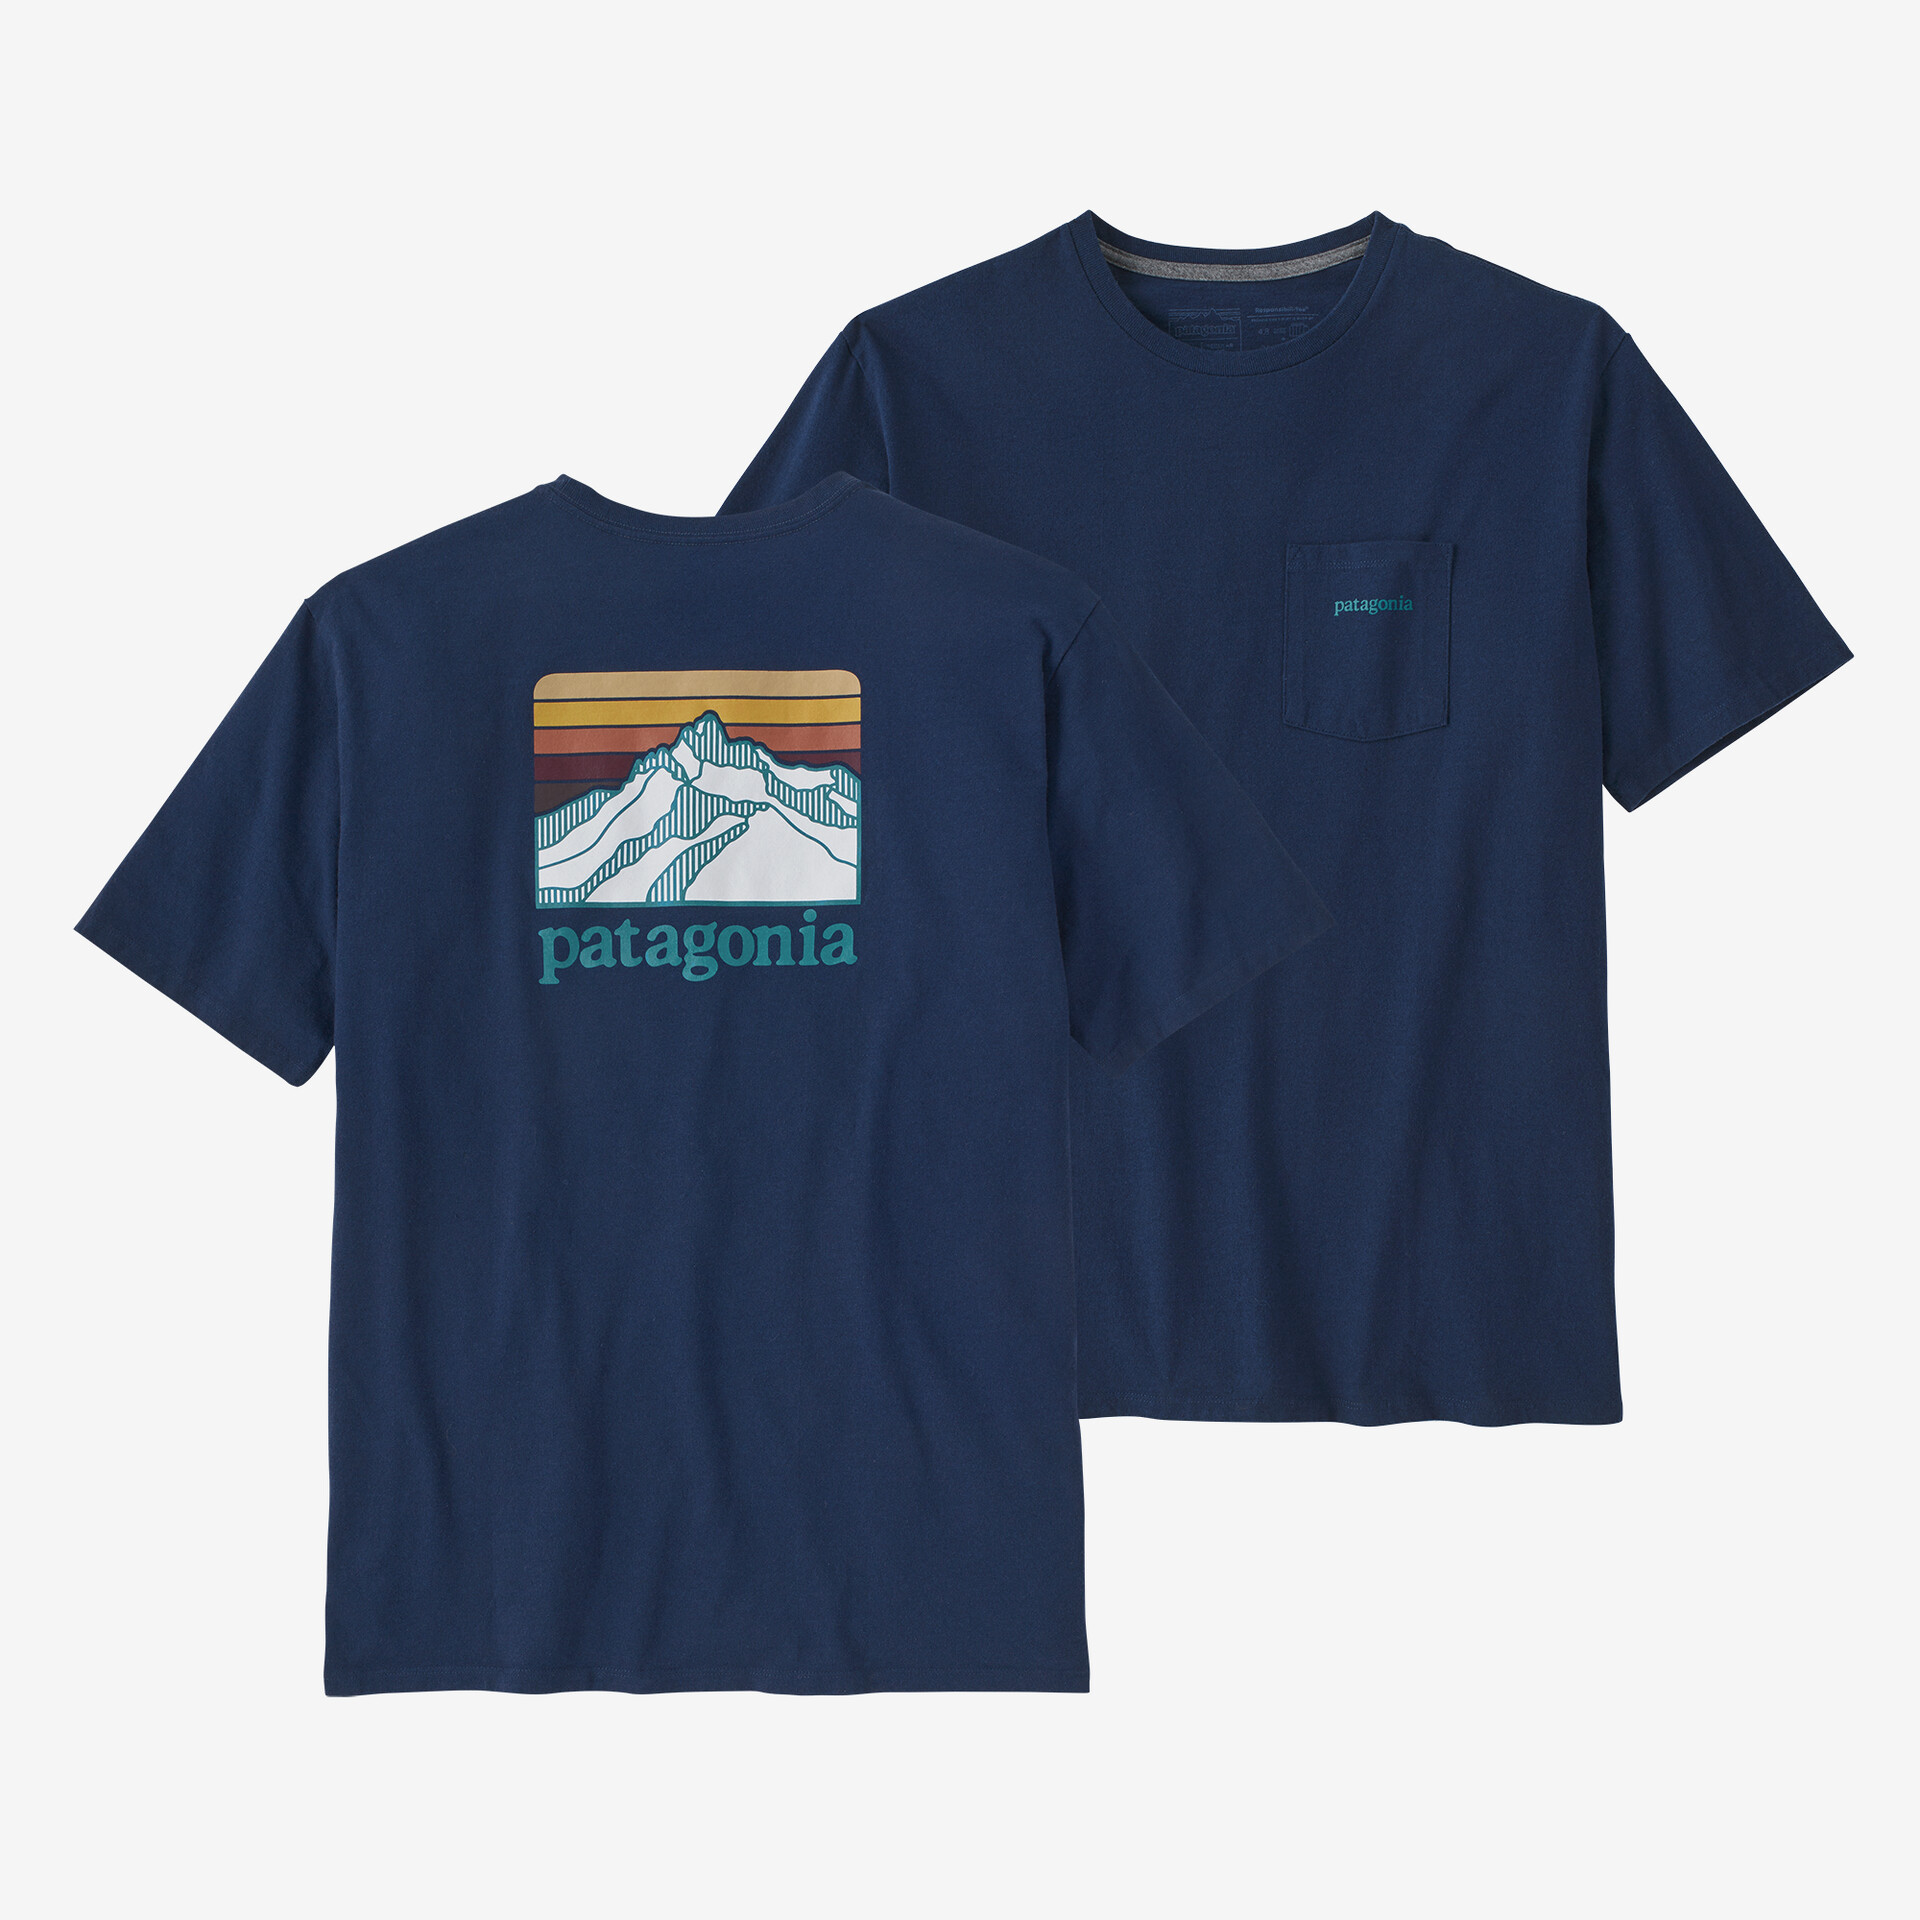 Мужская ответственная футболка с логотипом и карманом Patagonia, лагом синий в горах графика